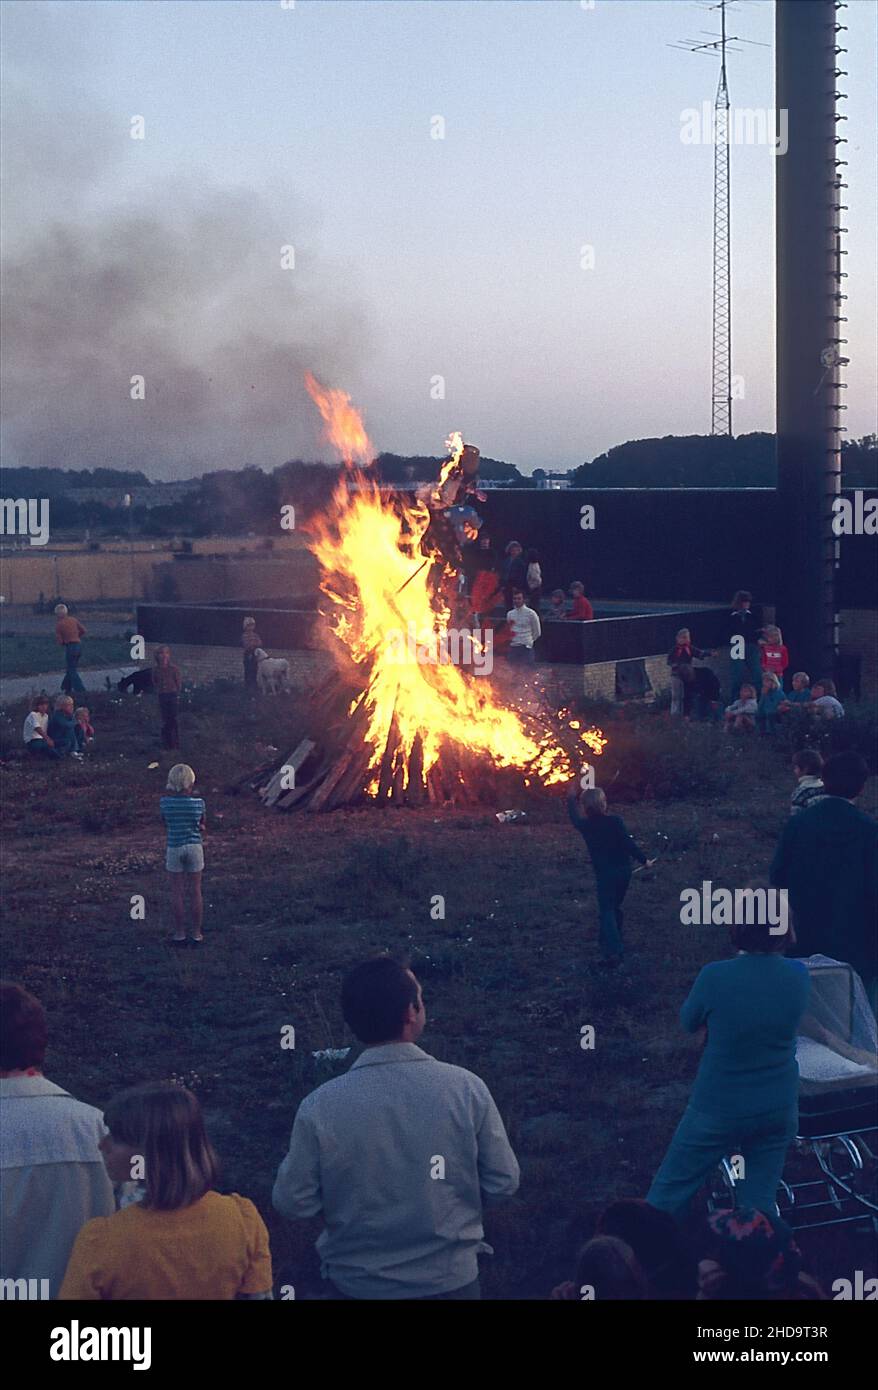 Bonfire at St. Hans Festival in Kokkedal near Copenhagen Denmark. Stock Photo